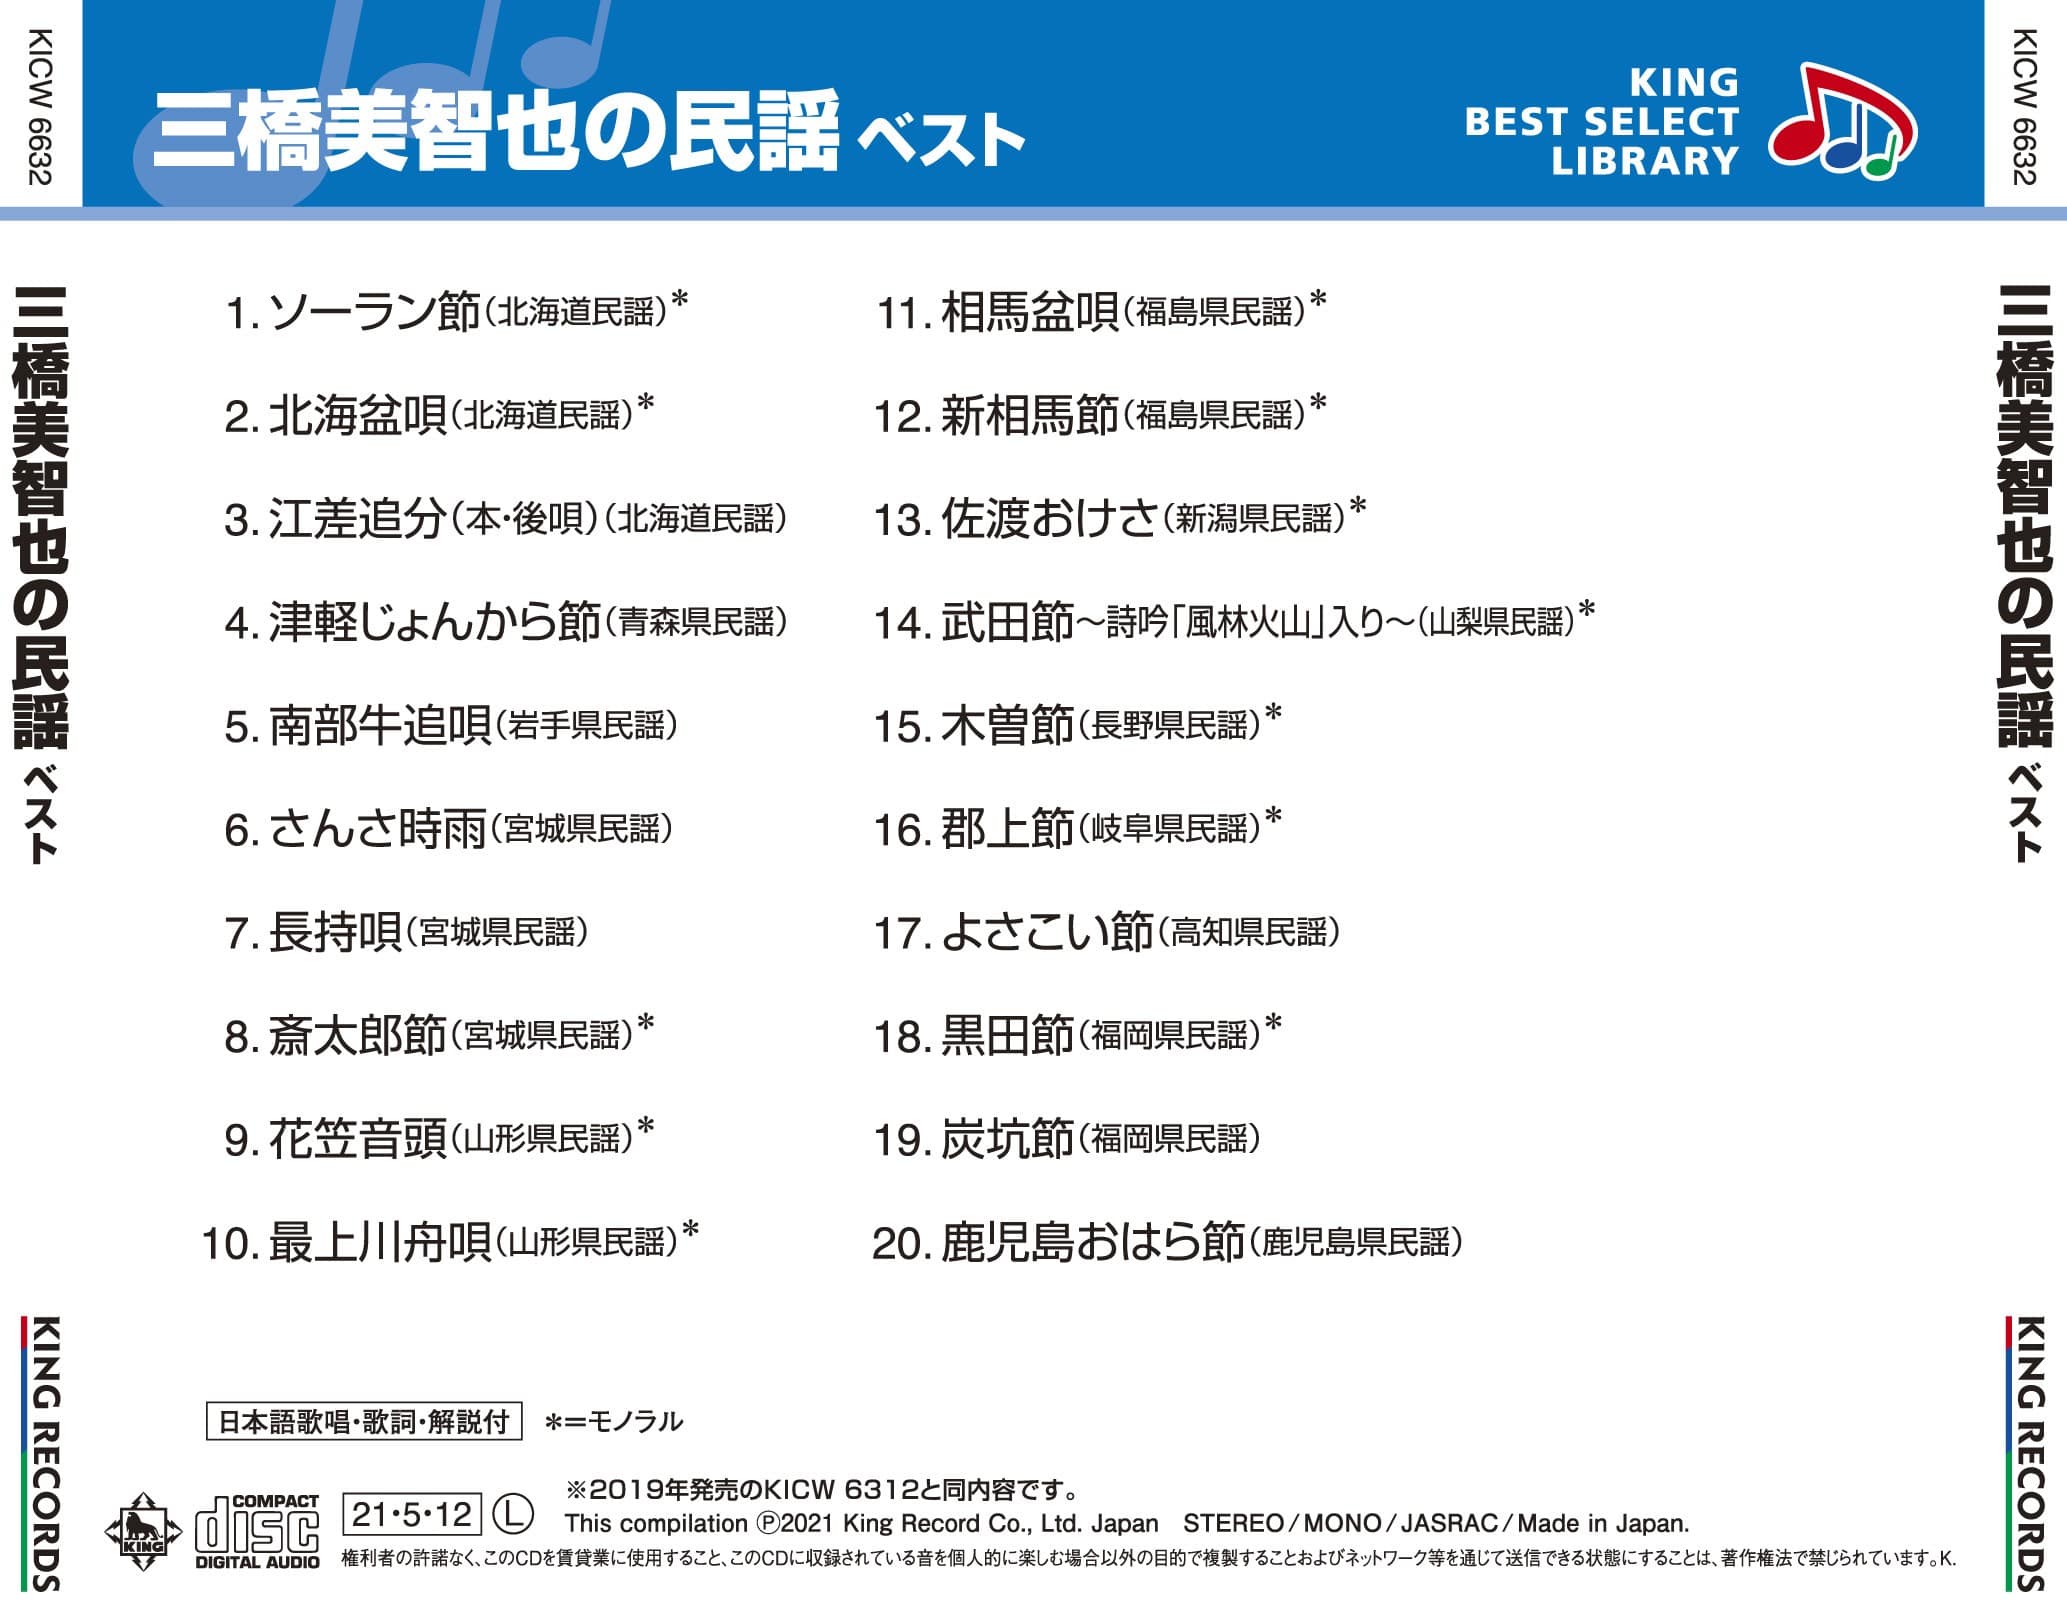 三橋美智也の民謡 ベスト キング・ベスト・セレクト・ライブラリー2021